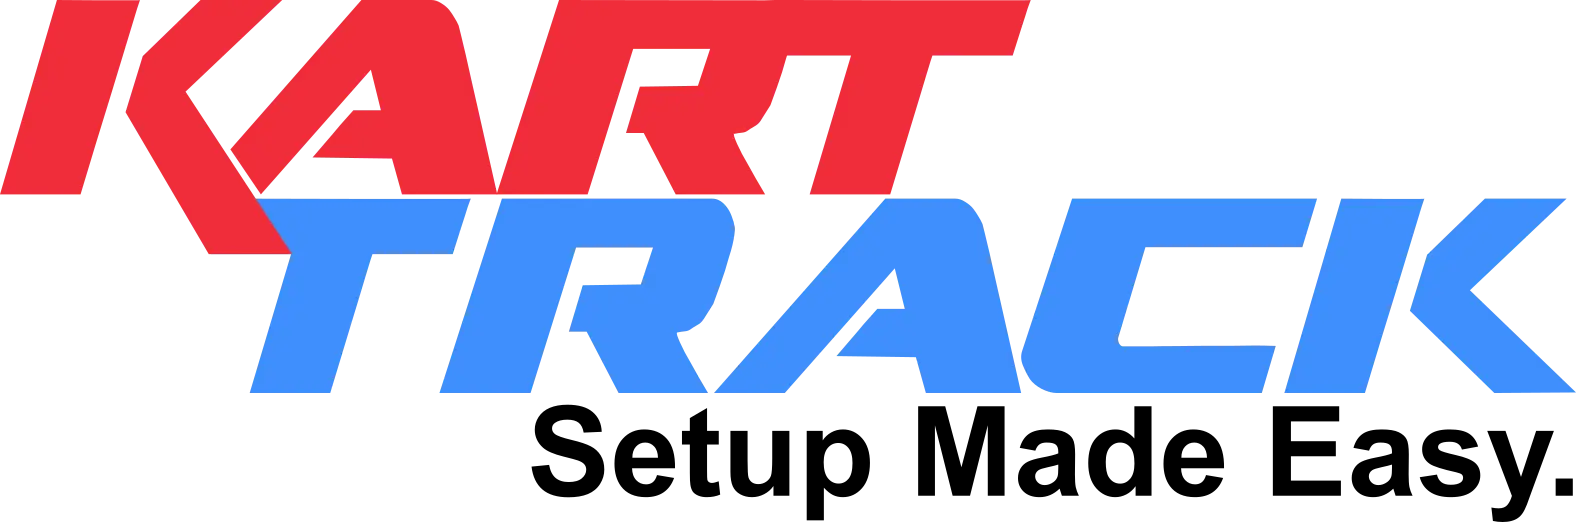 Kart-Track-Logo